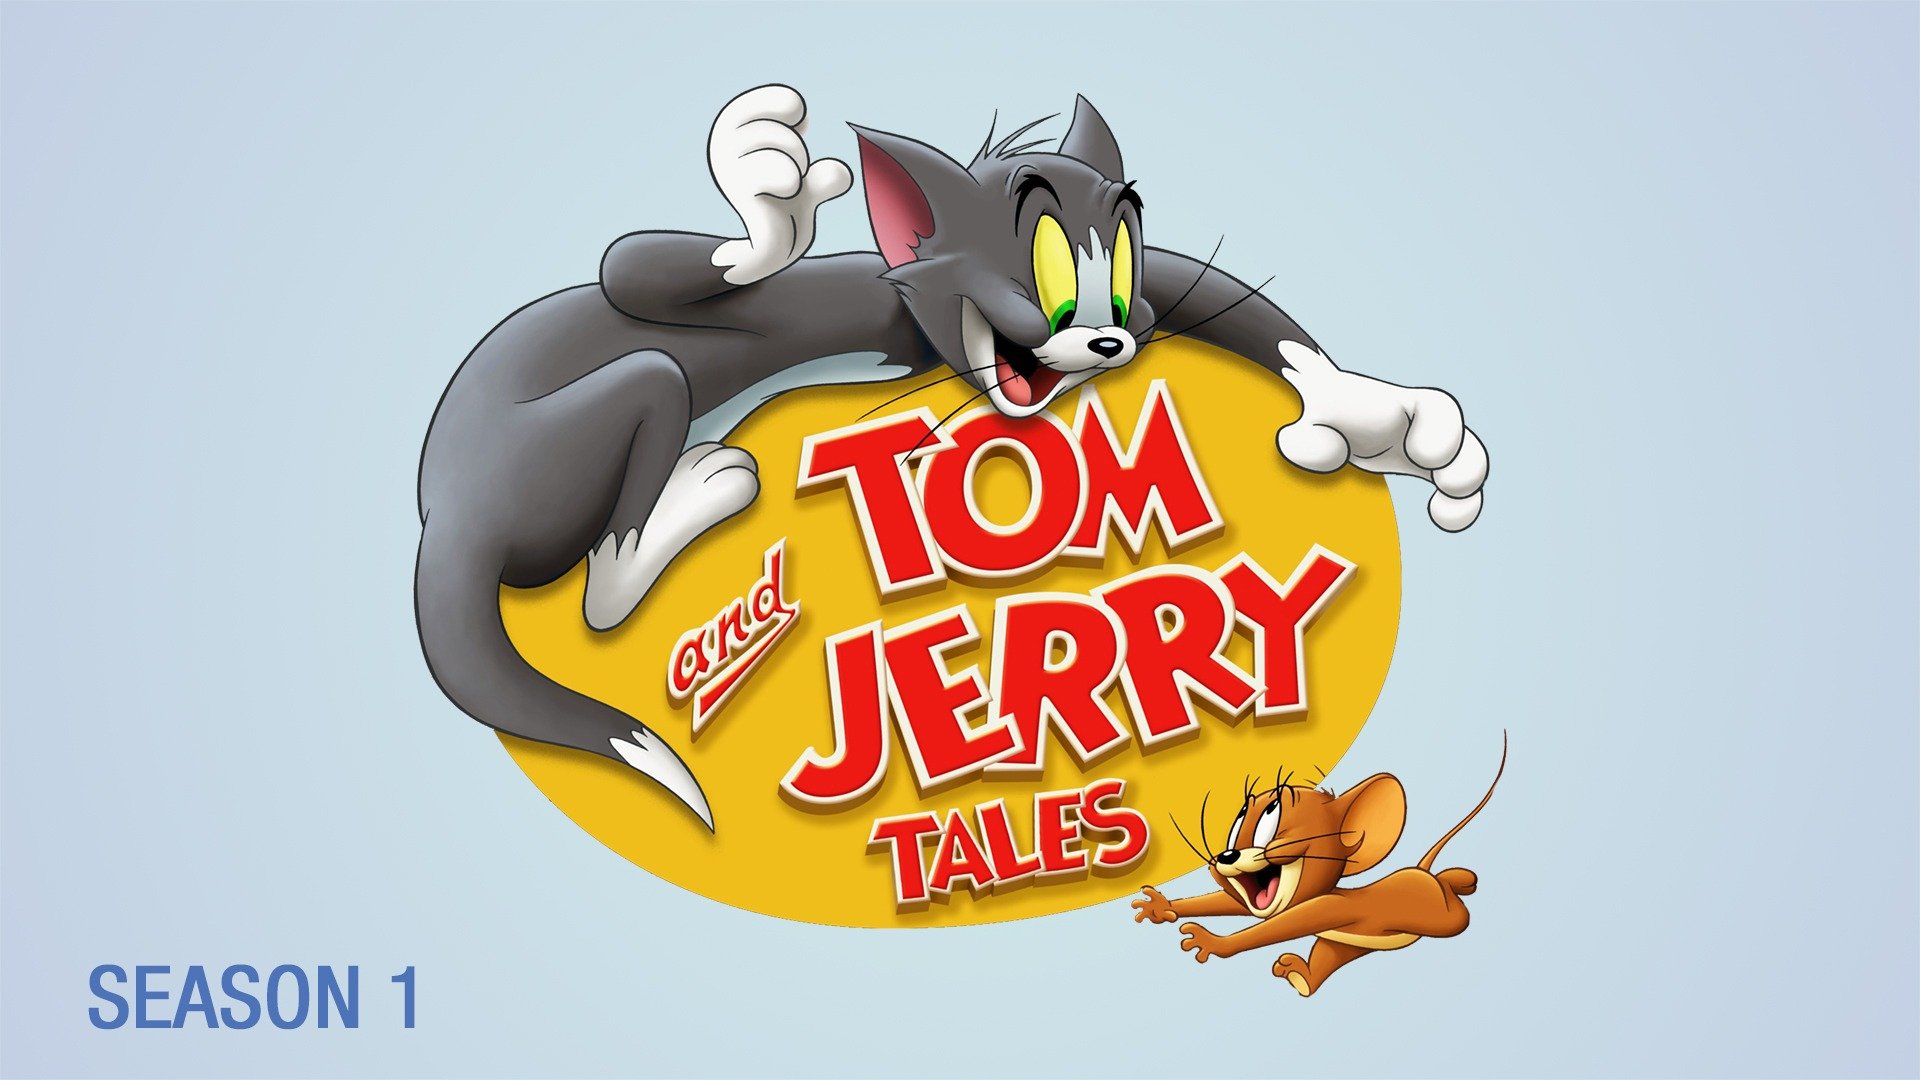 Tom jerry 2. Том и Джерри. NJV B LKTHB. Том и Джерри картинки. Том и Джерри персонажи.